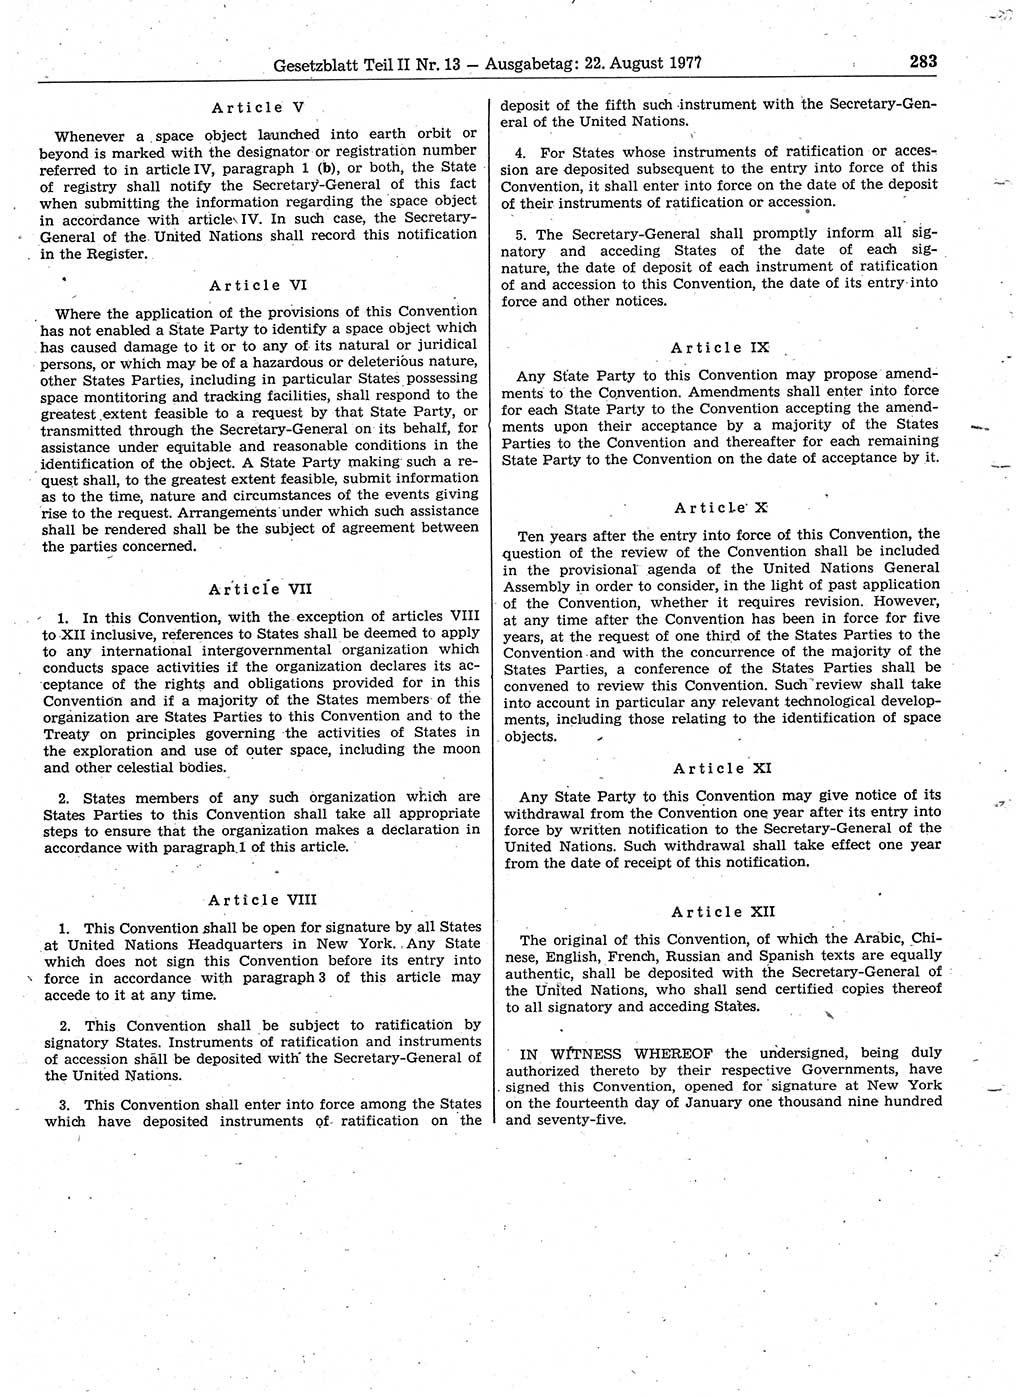 Gesetzblatt (GBl.) der Deutschen Demokratischen Republik (DDR) Teil ⅠⅠ 1977, Seite 283 (GBl. DDR ⅠⅠ 1977, S. 283)